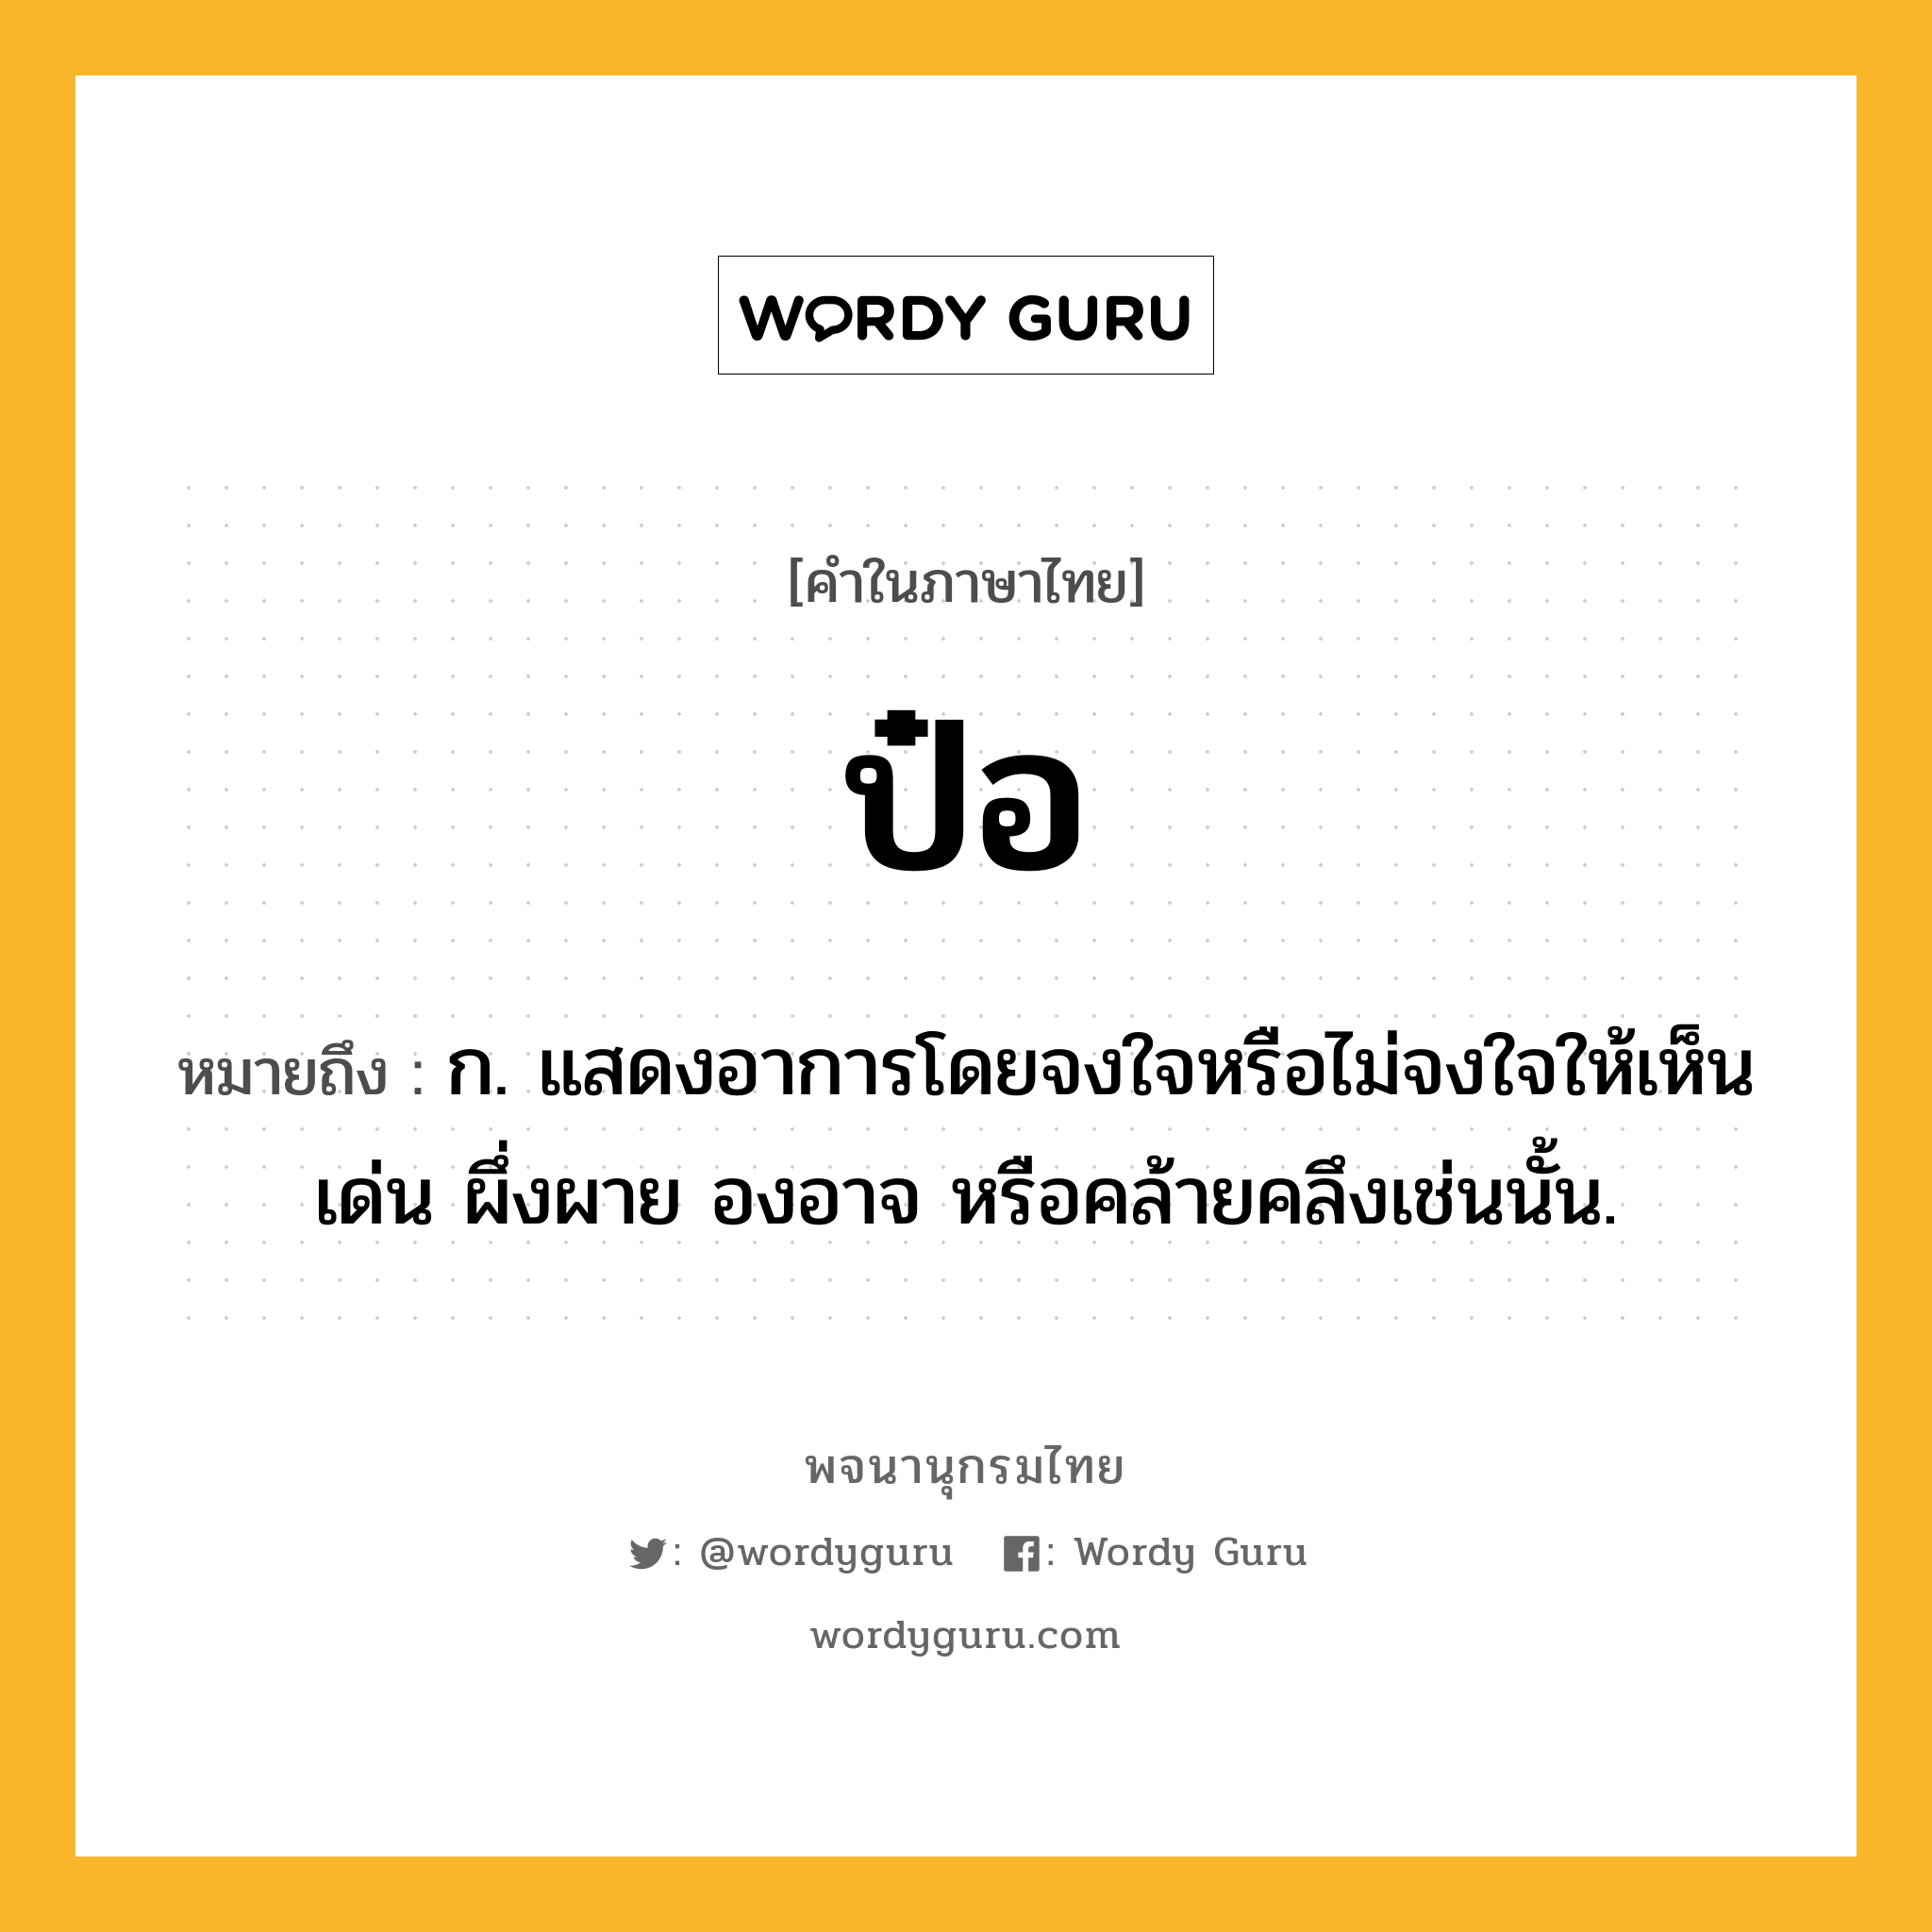 ป๋อ ความหมาย หมายถึงอะไร?, คำในภาษาไทย ป๋อ หมายถึง ก. แสดงอาการโดยจงใจหรือไม่จงใจให้เห็นเด่น ผึ่งผาย องอาจ หรือคล้ายคลึงเช่นนั้น.